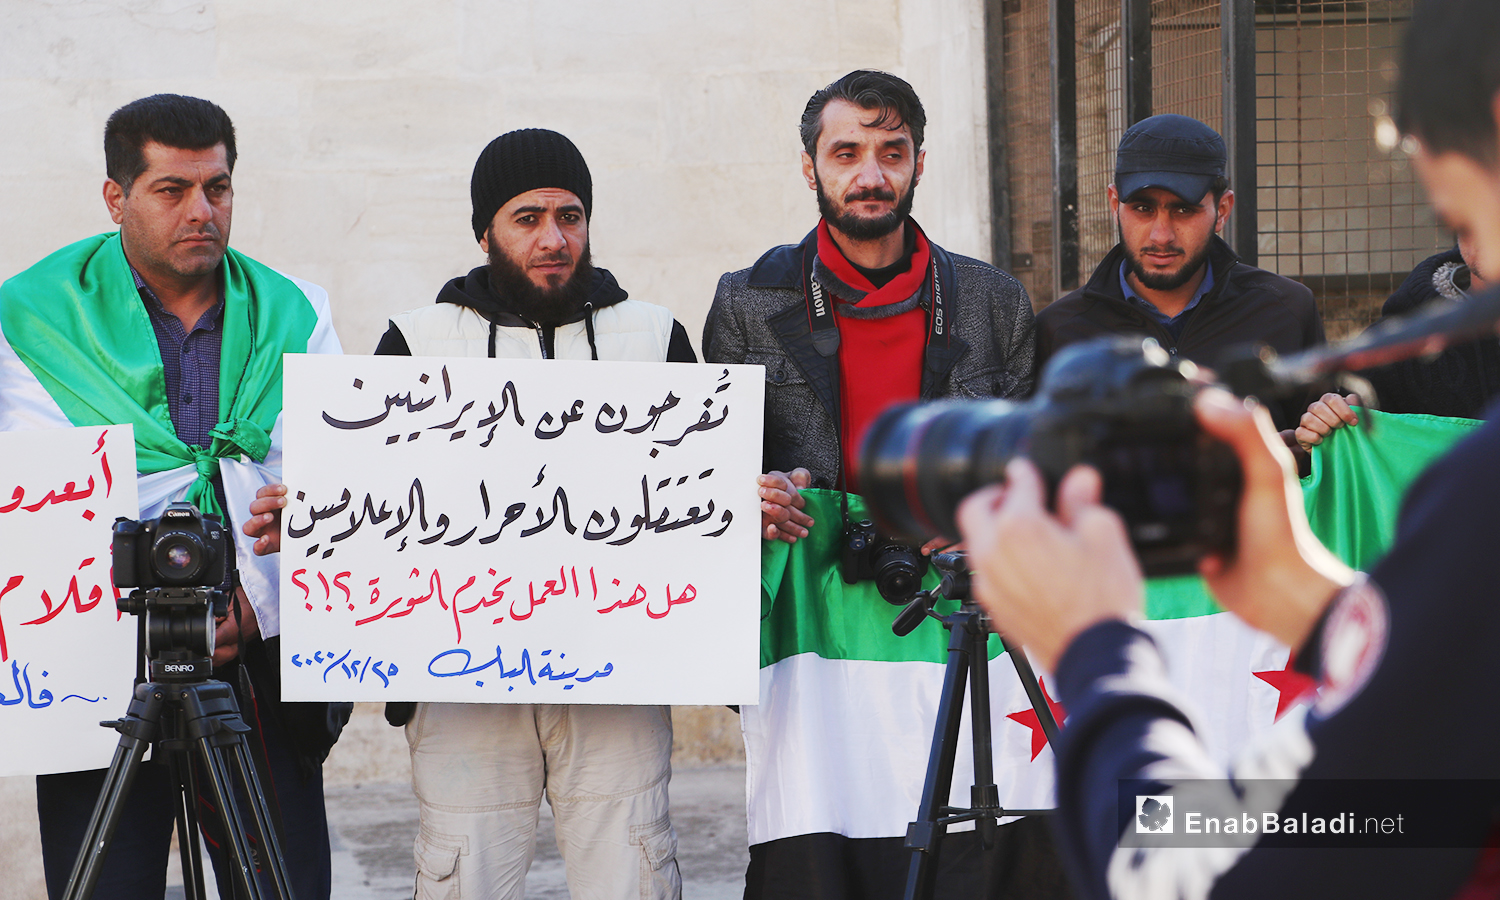 إعلاميون وناشطون يقفون تضامنًا ضد اعتقال الصحفي مصطفى عبد الفتاح الحسين لدى هيئة تحرير الشام  -25 كانون الأول 2020(عنب بلدي /عاصم المحلم)